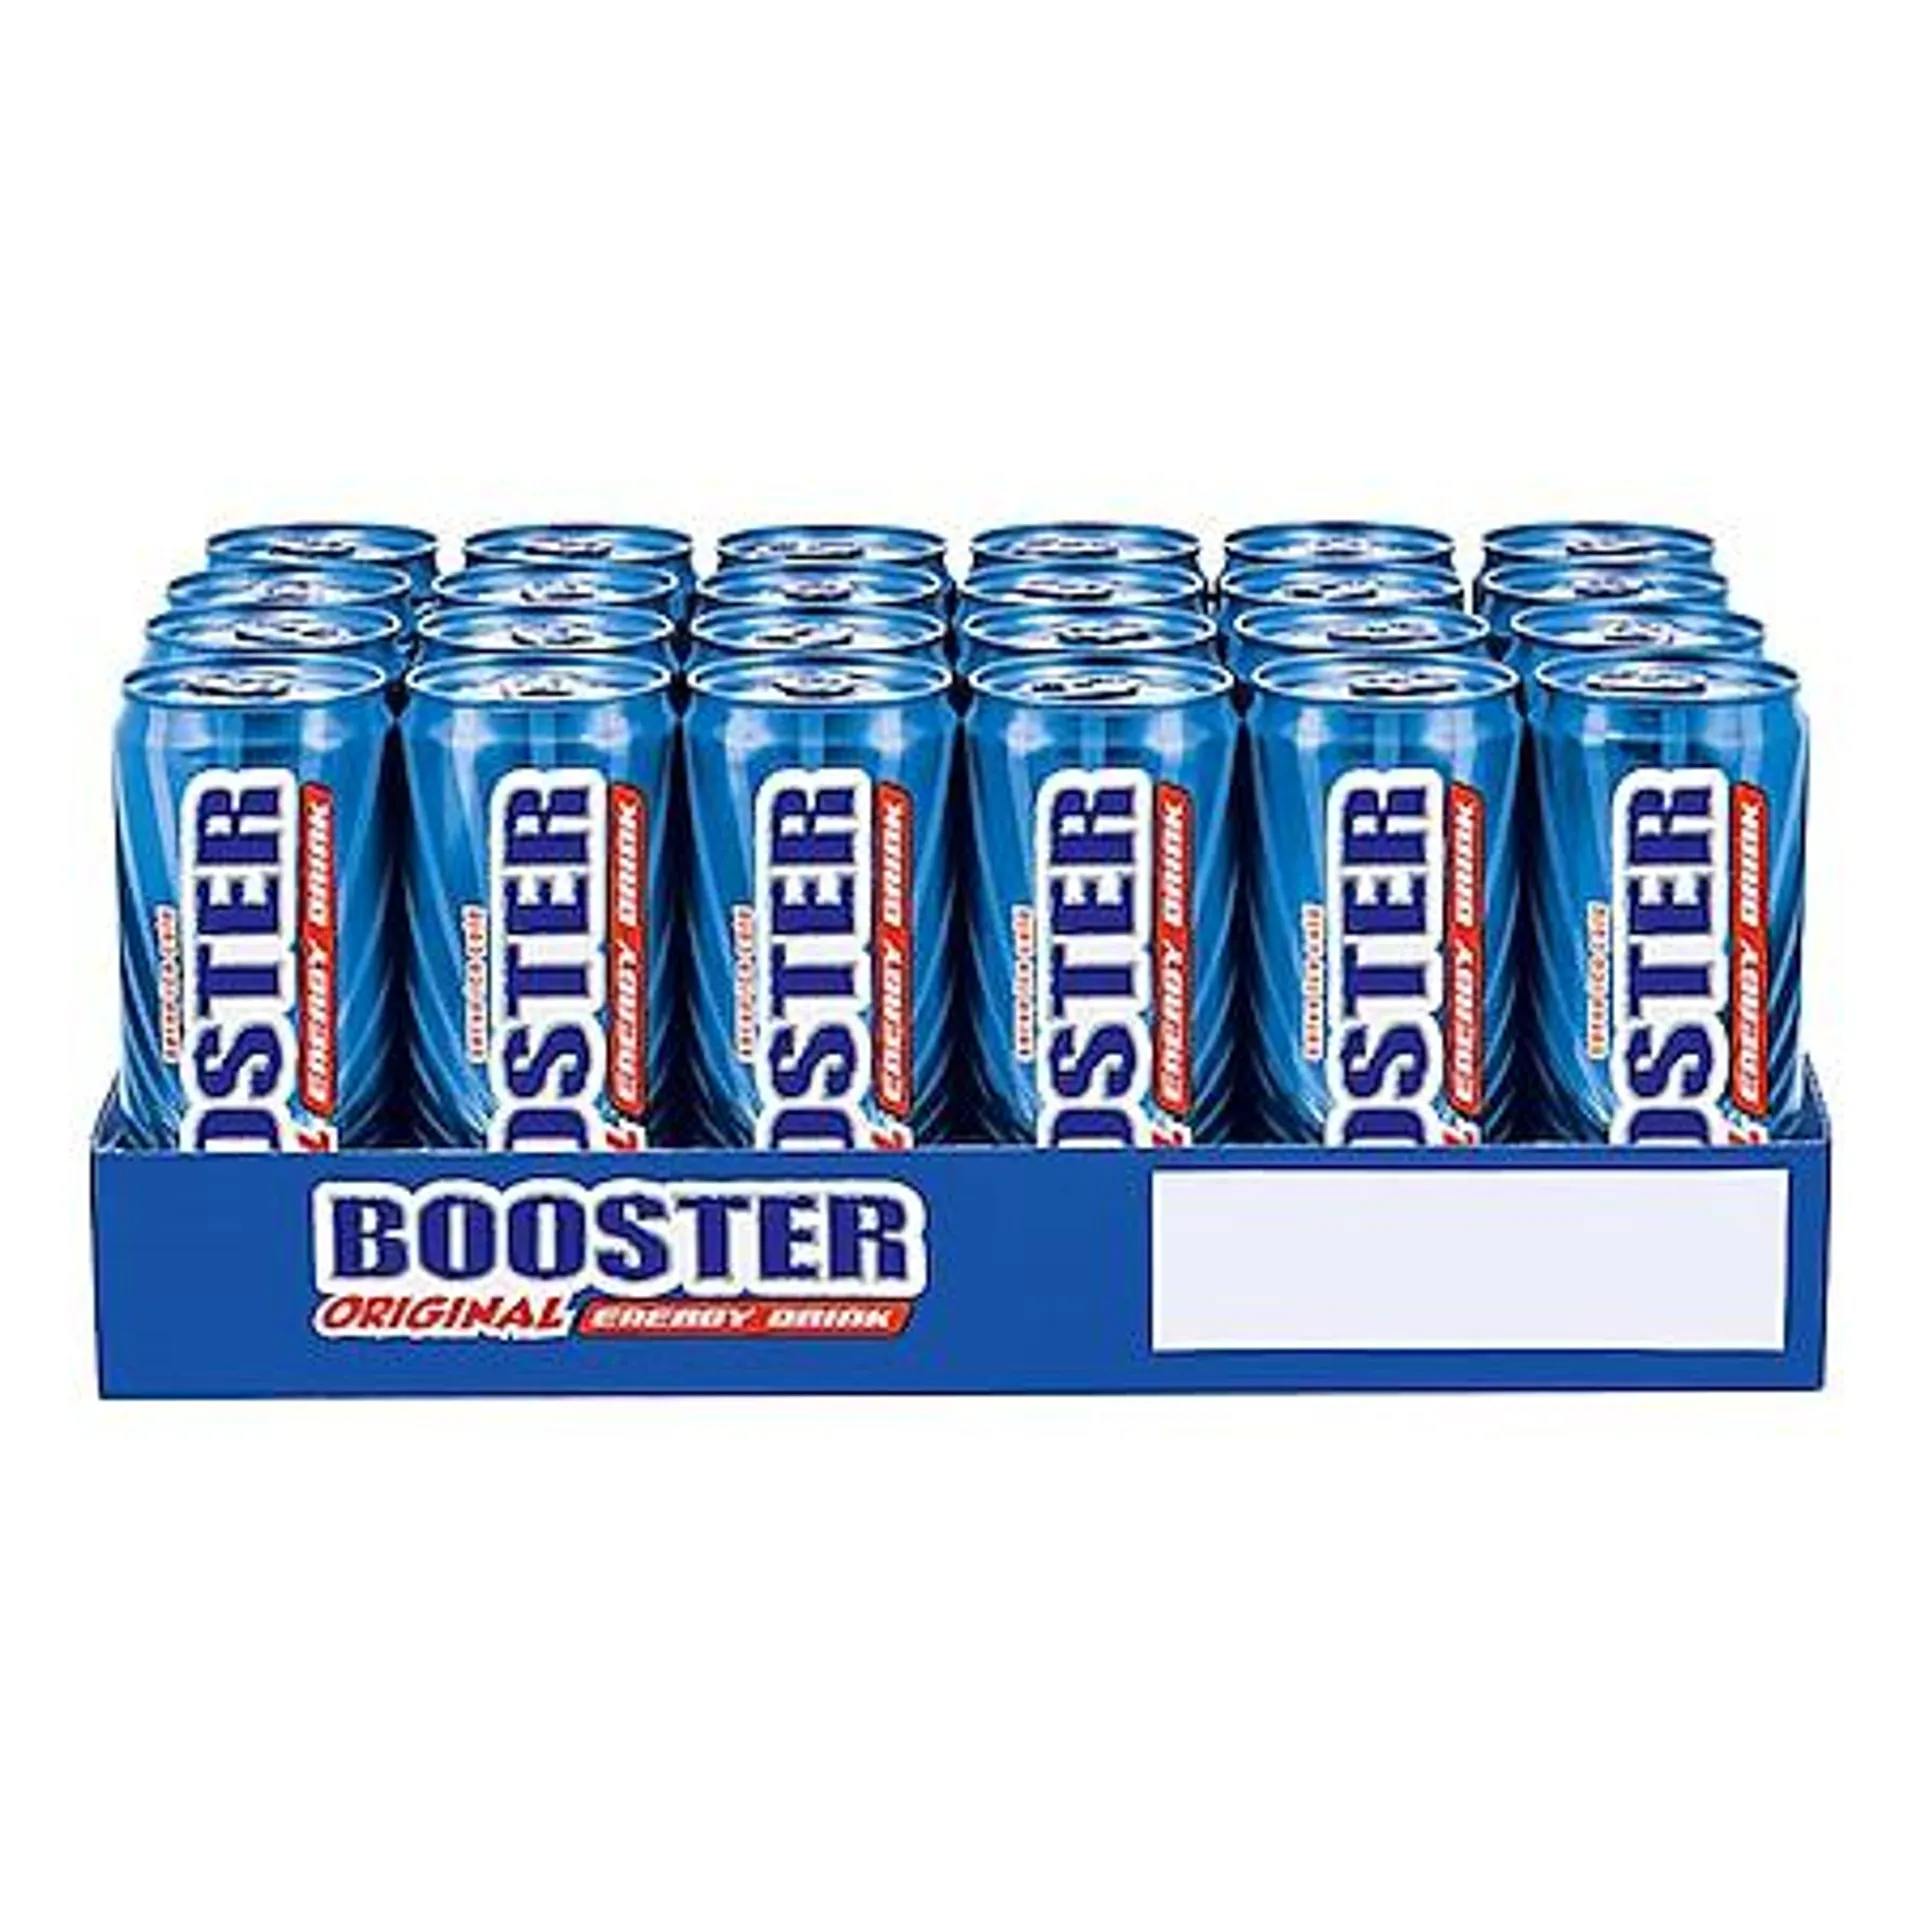 Booster Energy Drink Original 0,33 Liter Dose, 24er Pack